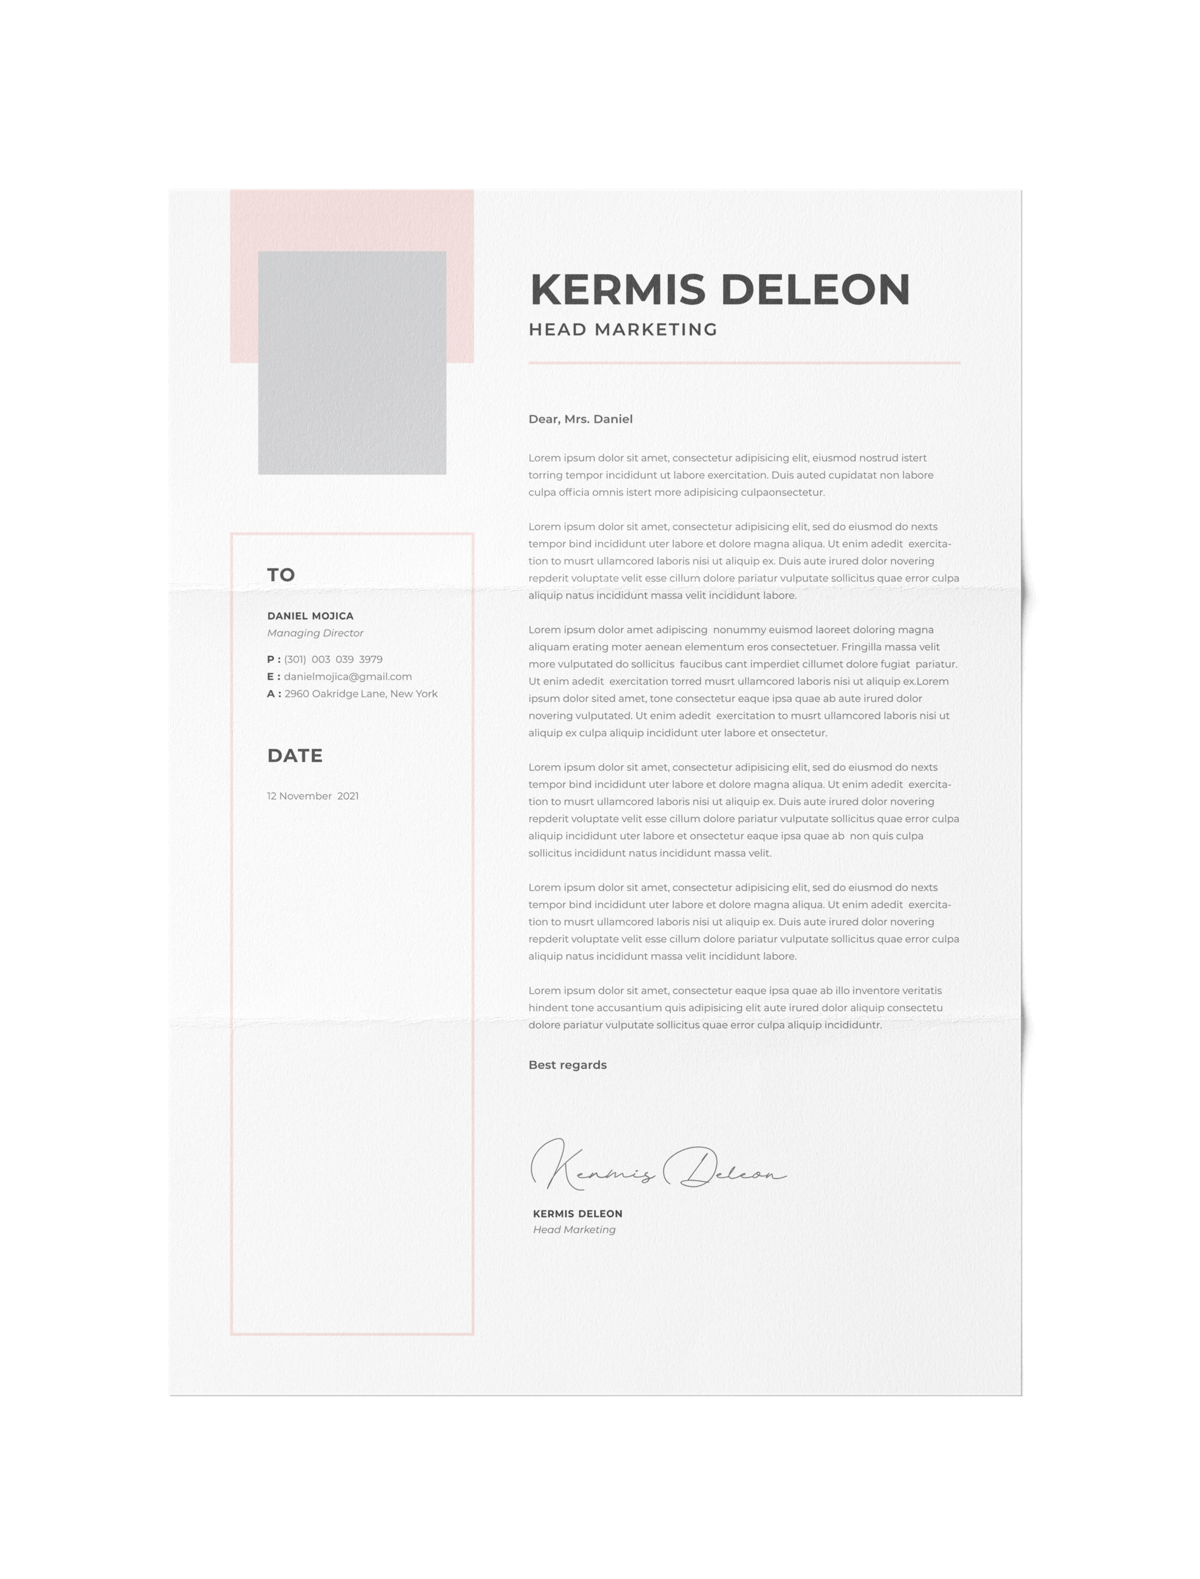 CV #147 Kermis Deleon